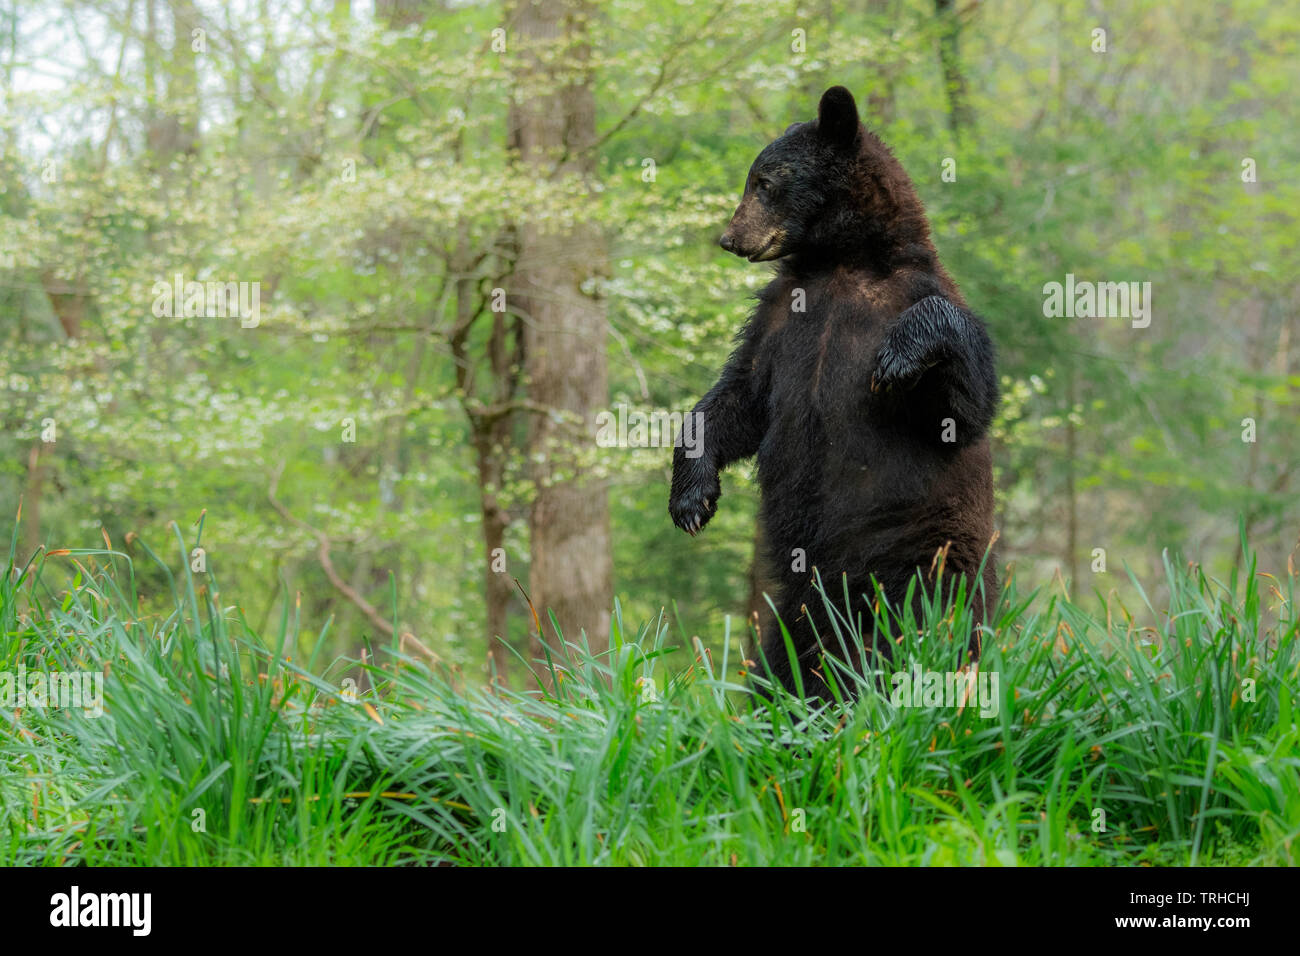 Amerikanischer Schwarzbär (Ursus americanus), Wald, östlichen Vereinigten Staaten, von Bill Lea/Dembinsky Foto Assoc Stockfoto